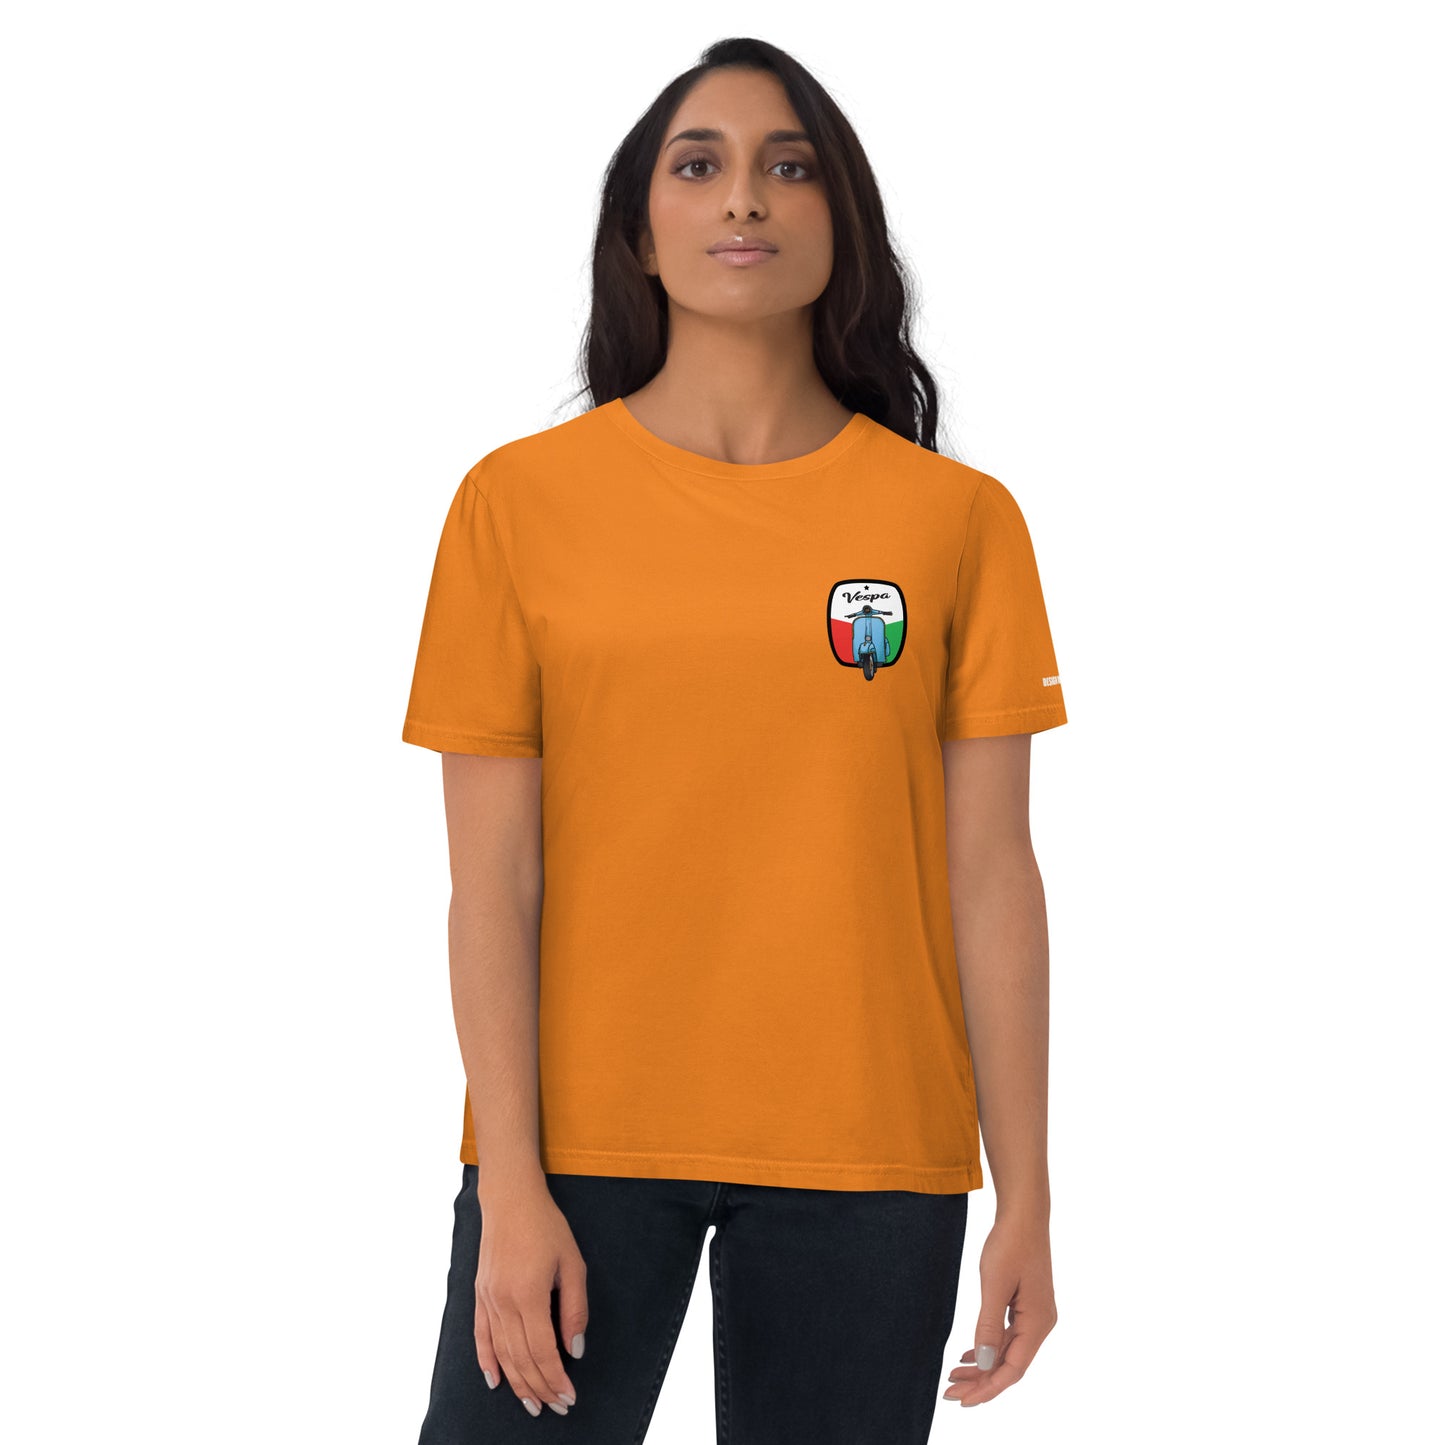 Maglietta in cotone organico unisex T-shirt con stemma Vespa ricamato